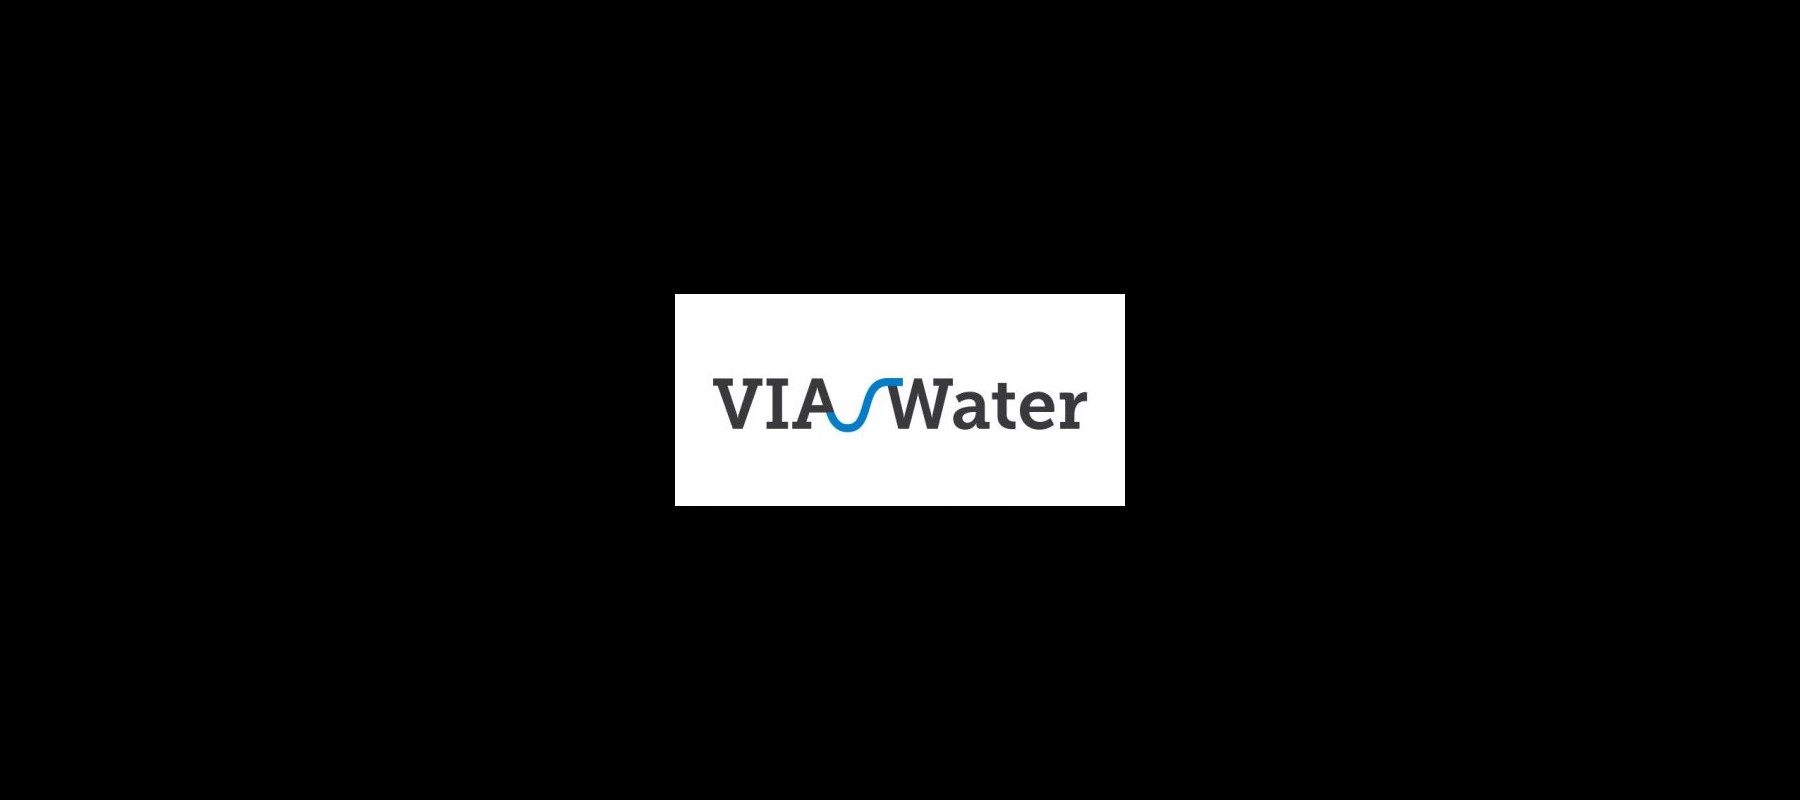 VIA Water